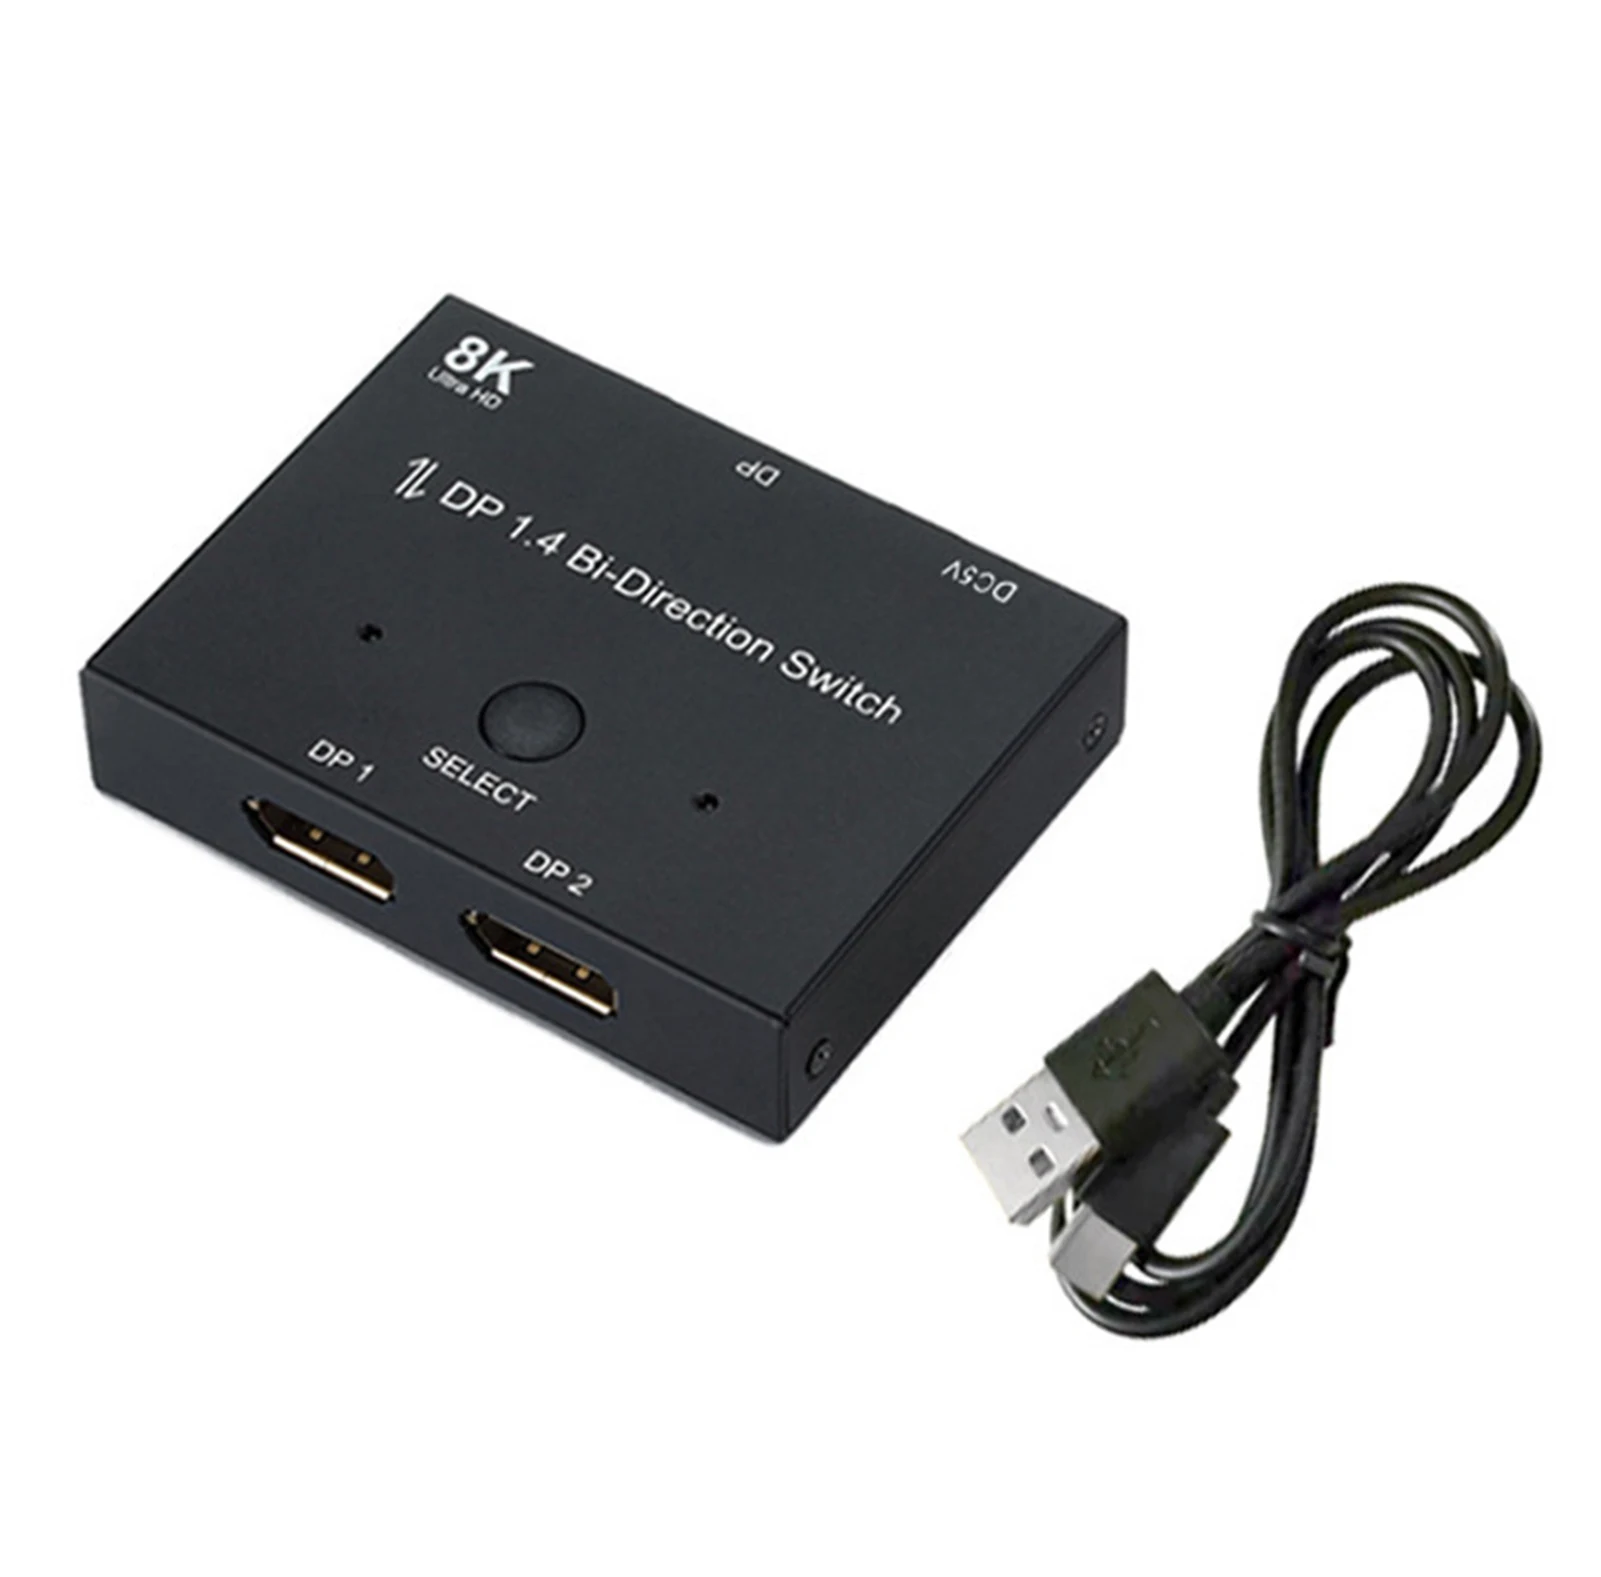 8k DP1.4 Splitter 2 In 1 Video Audio Adapter Bi-Directional Converter Support 8k@30hz 4k@120hz 2k@144hz Adapter For Computer